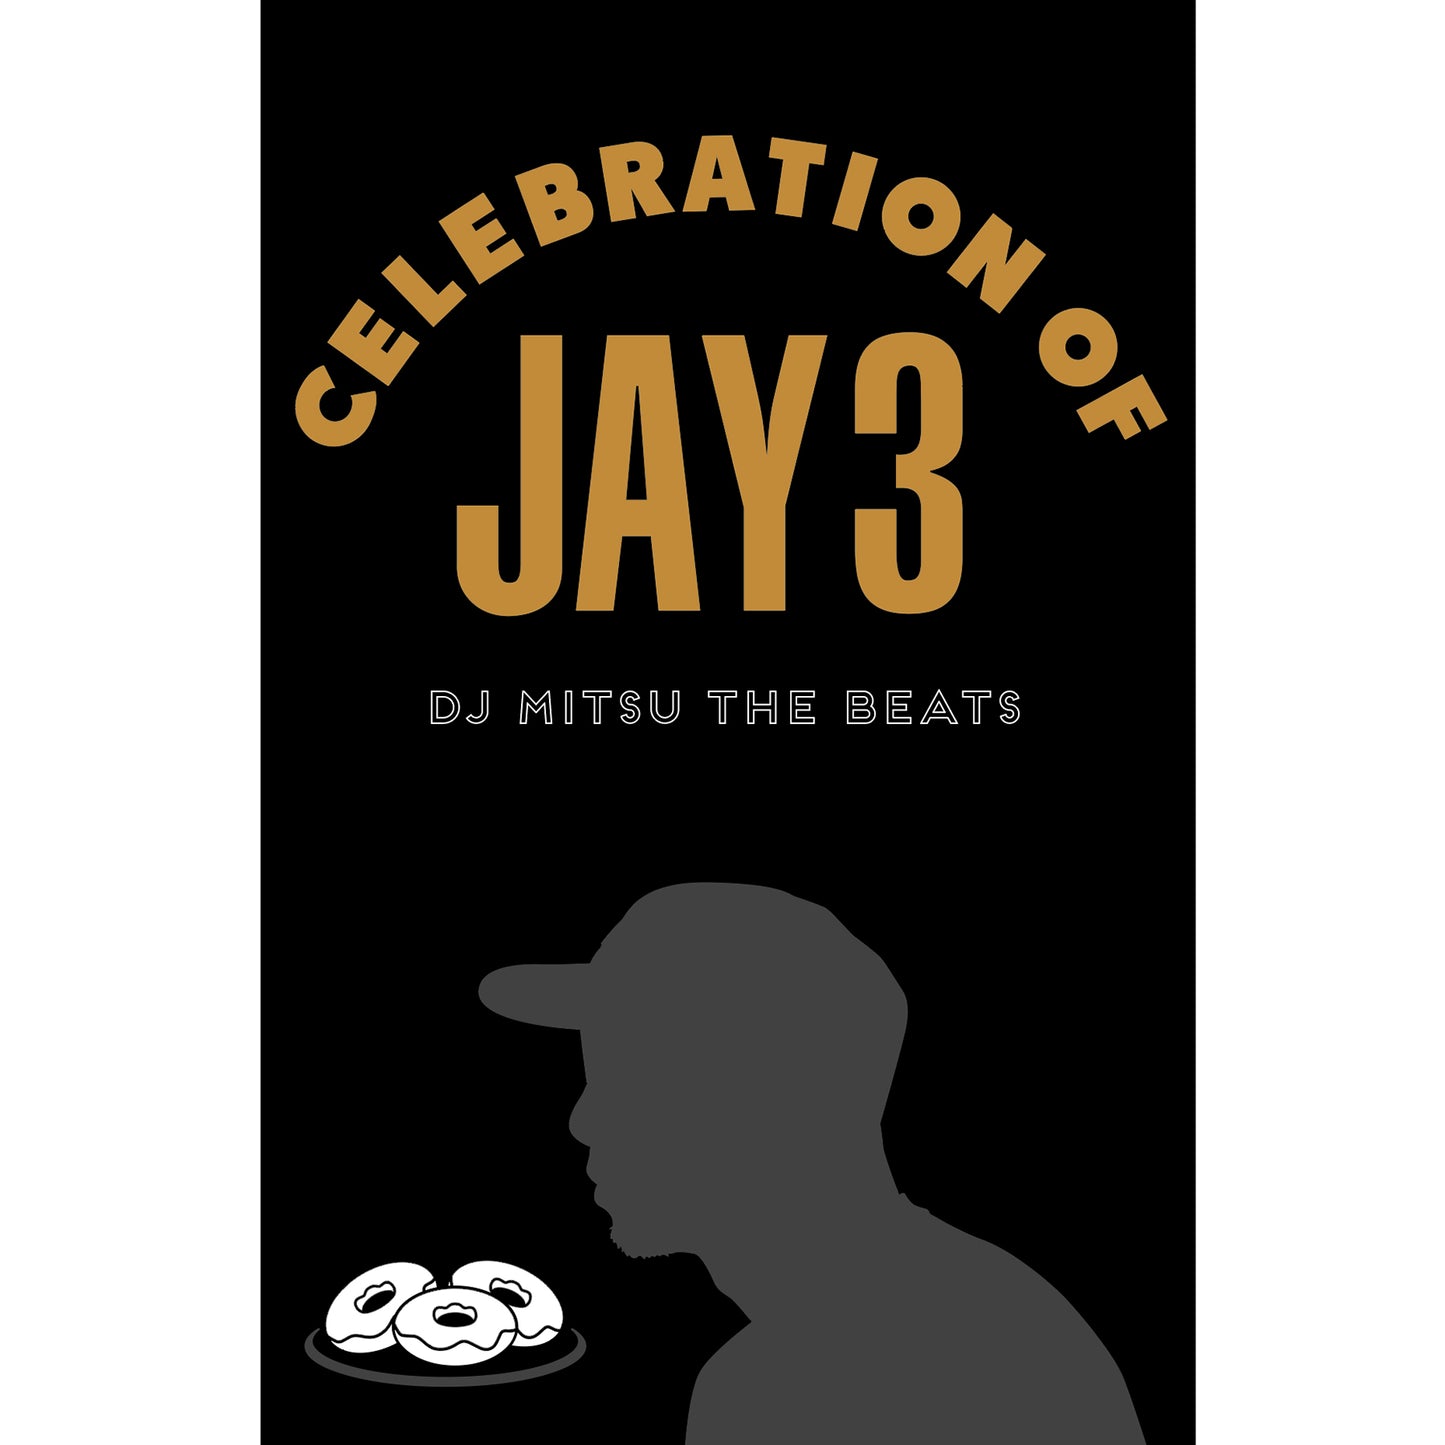 【Restock / Cassette Tape】DJ Mitsu the Beats - Celebration of Jay 3